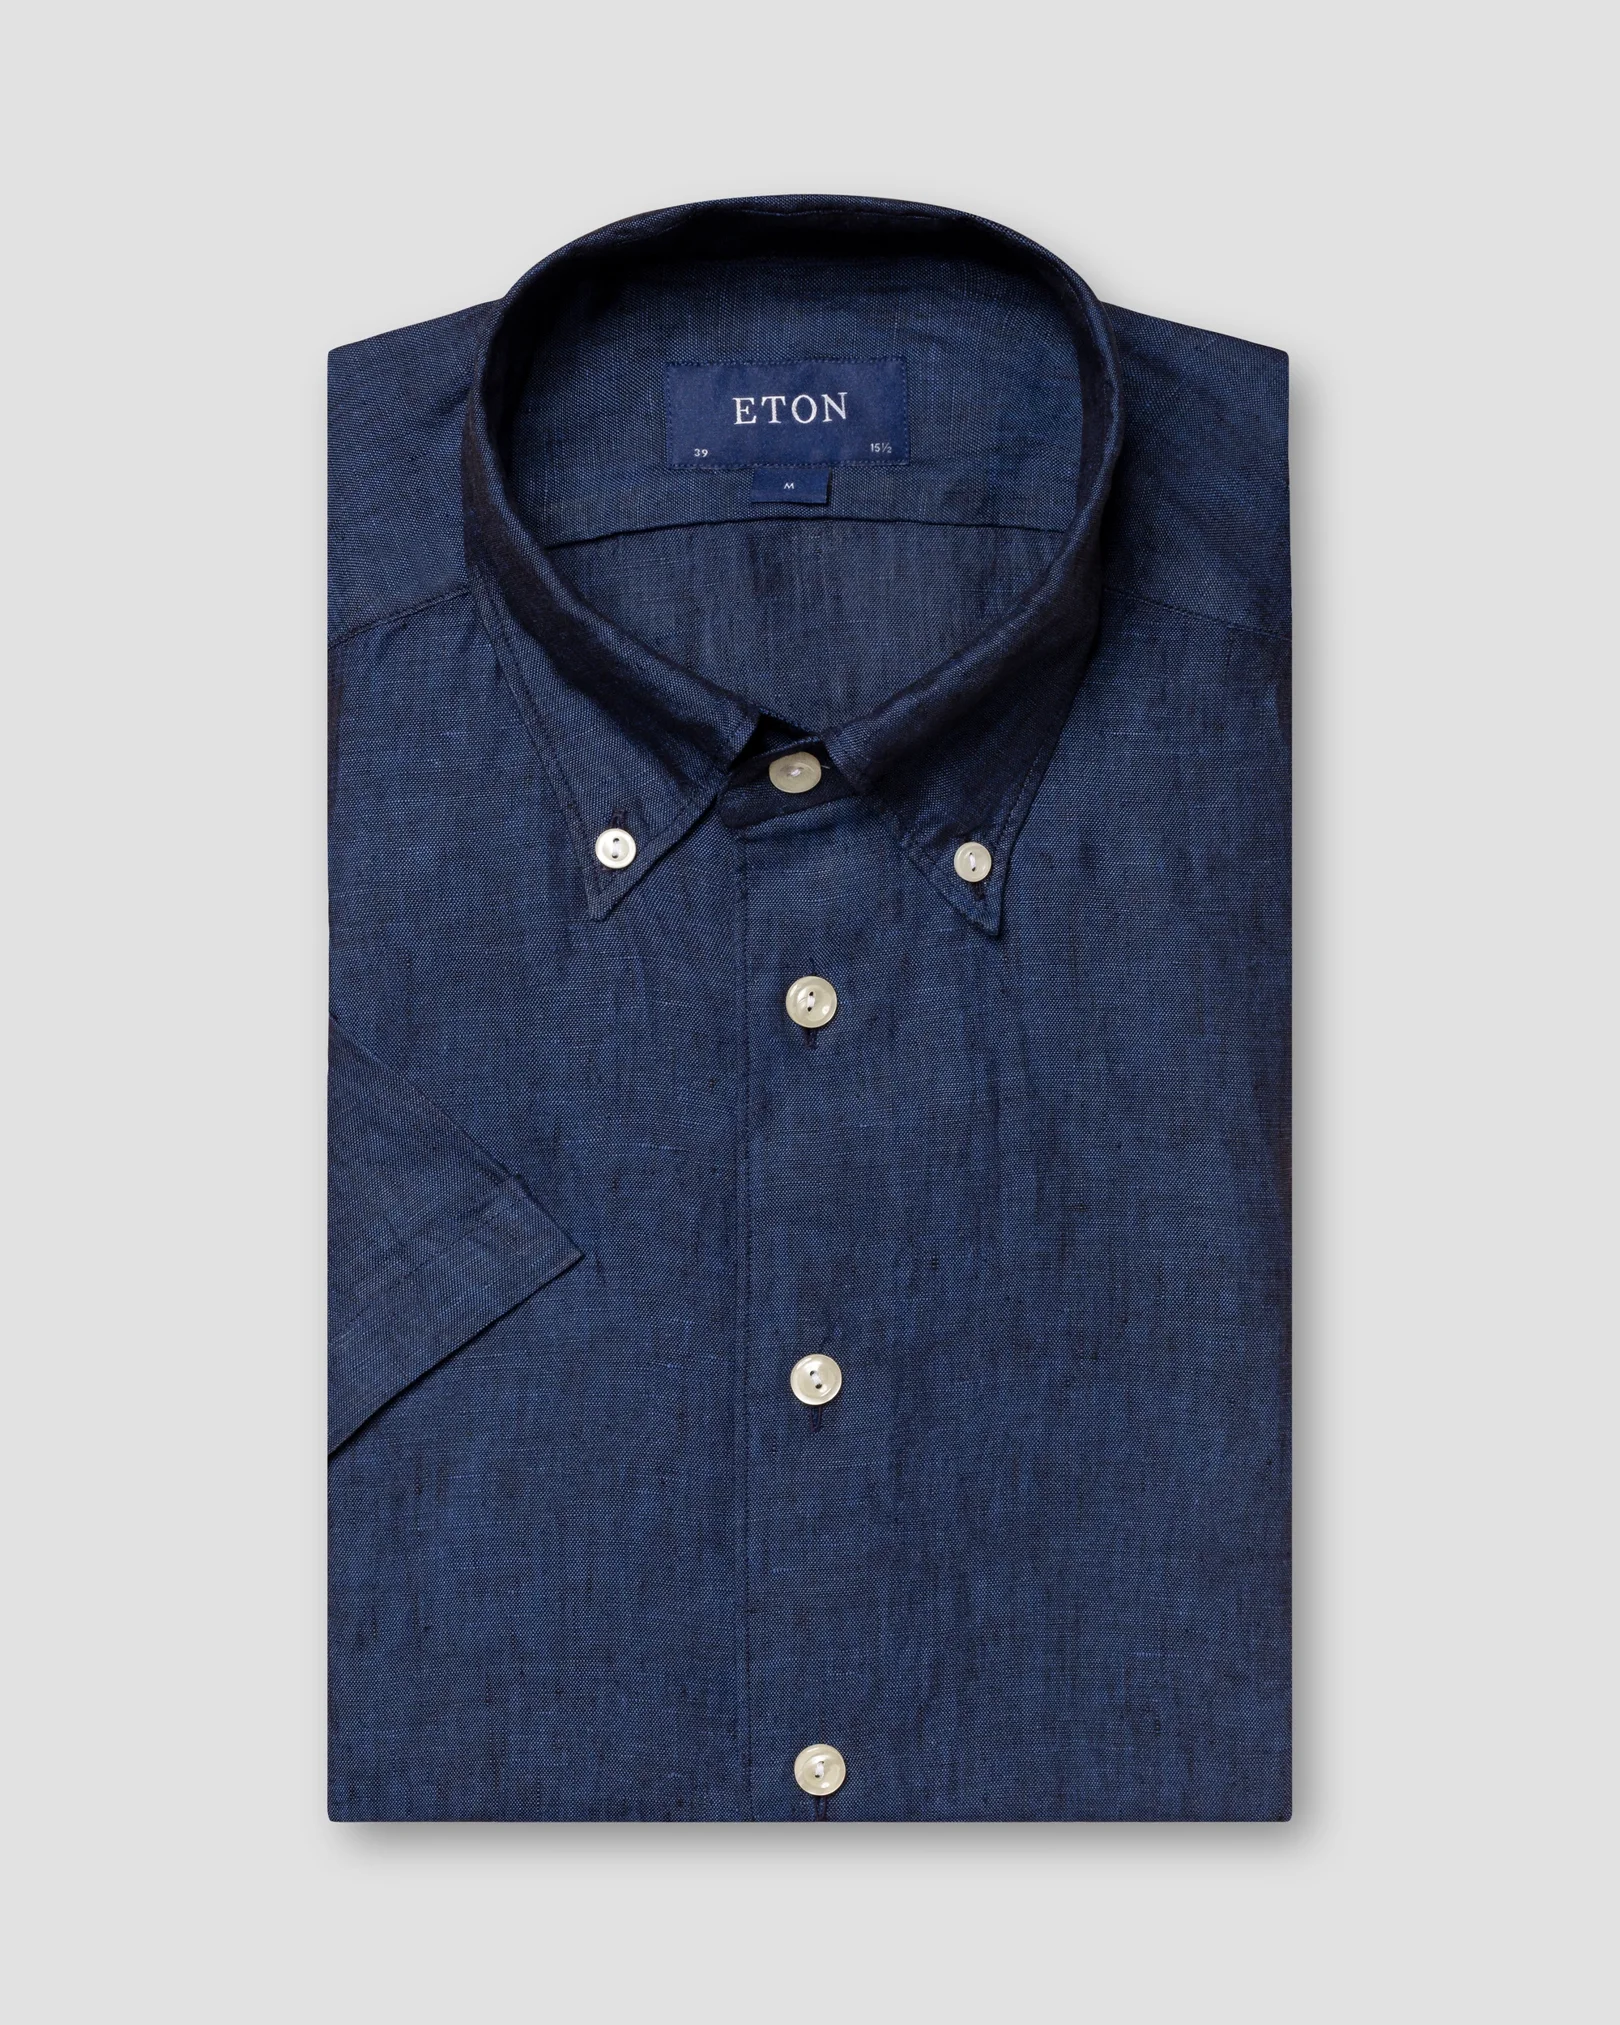 Eton - blue linen shirt short sleeve button down